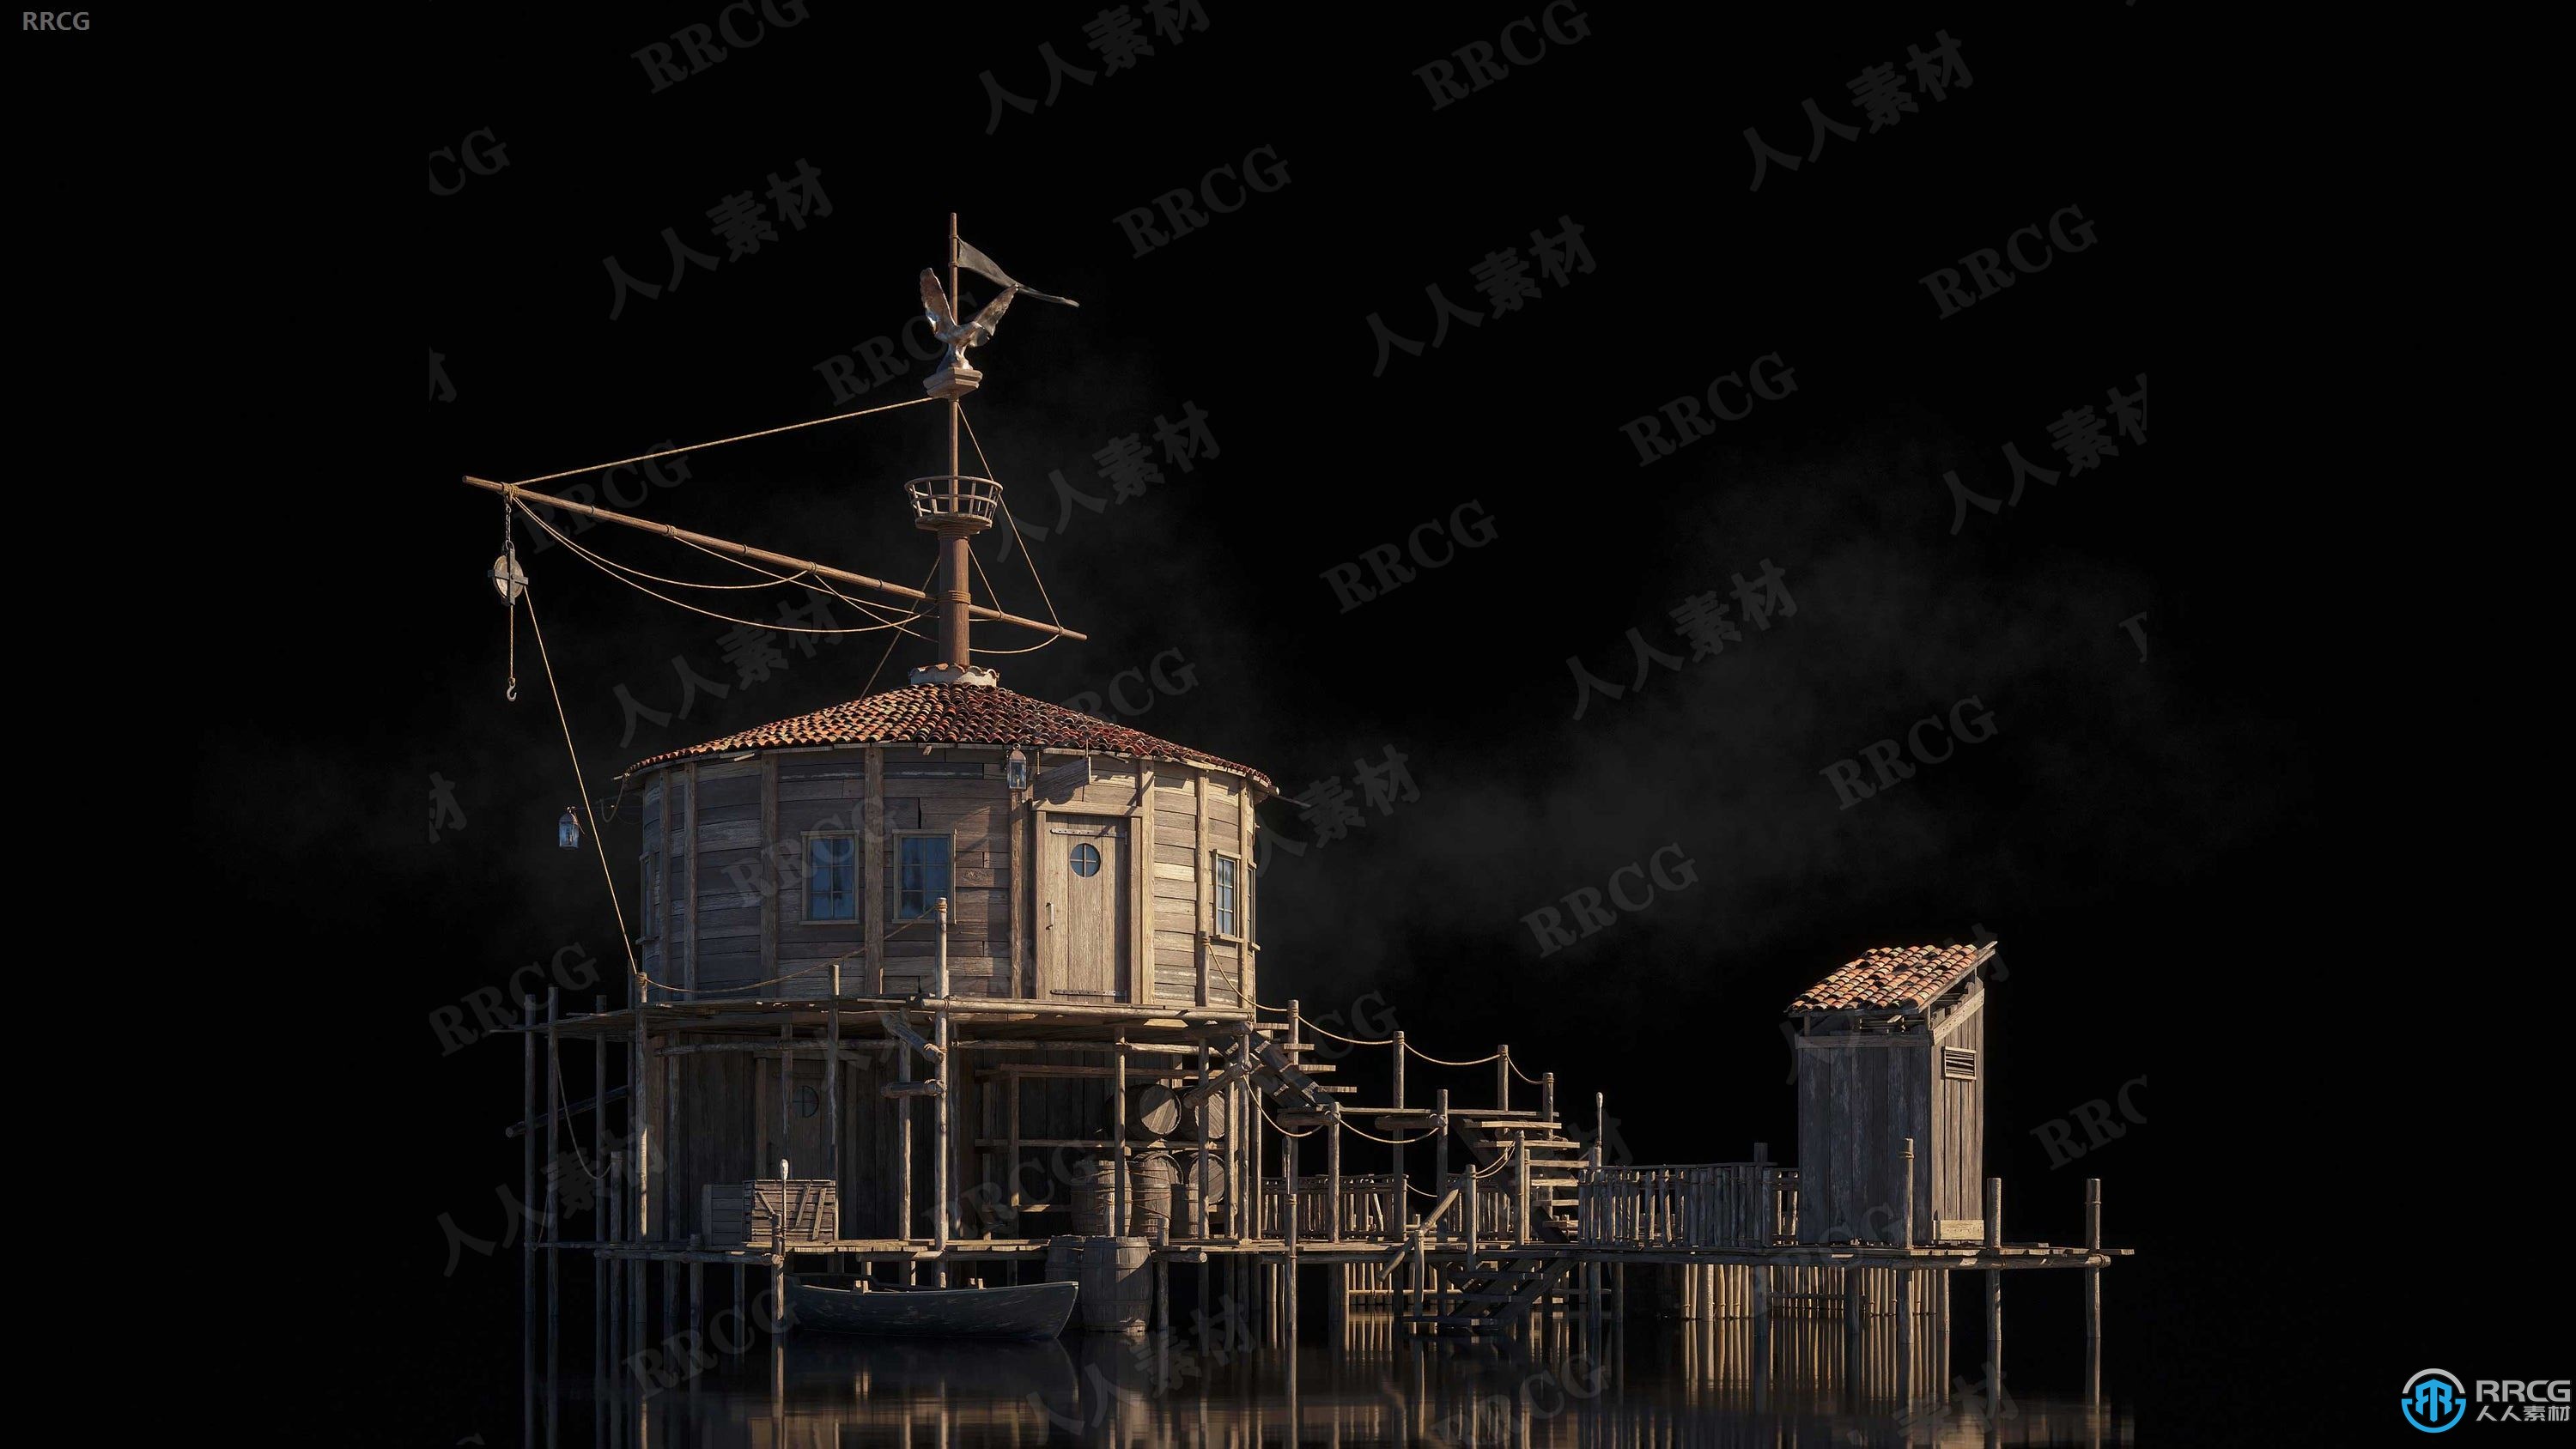 金银岛海盗天堂建筑景观完整细节3D模型合集